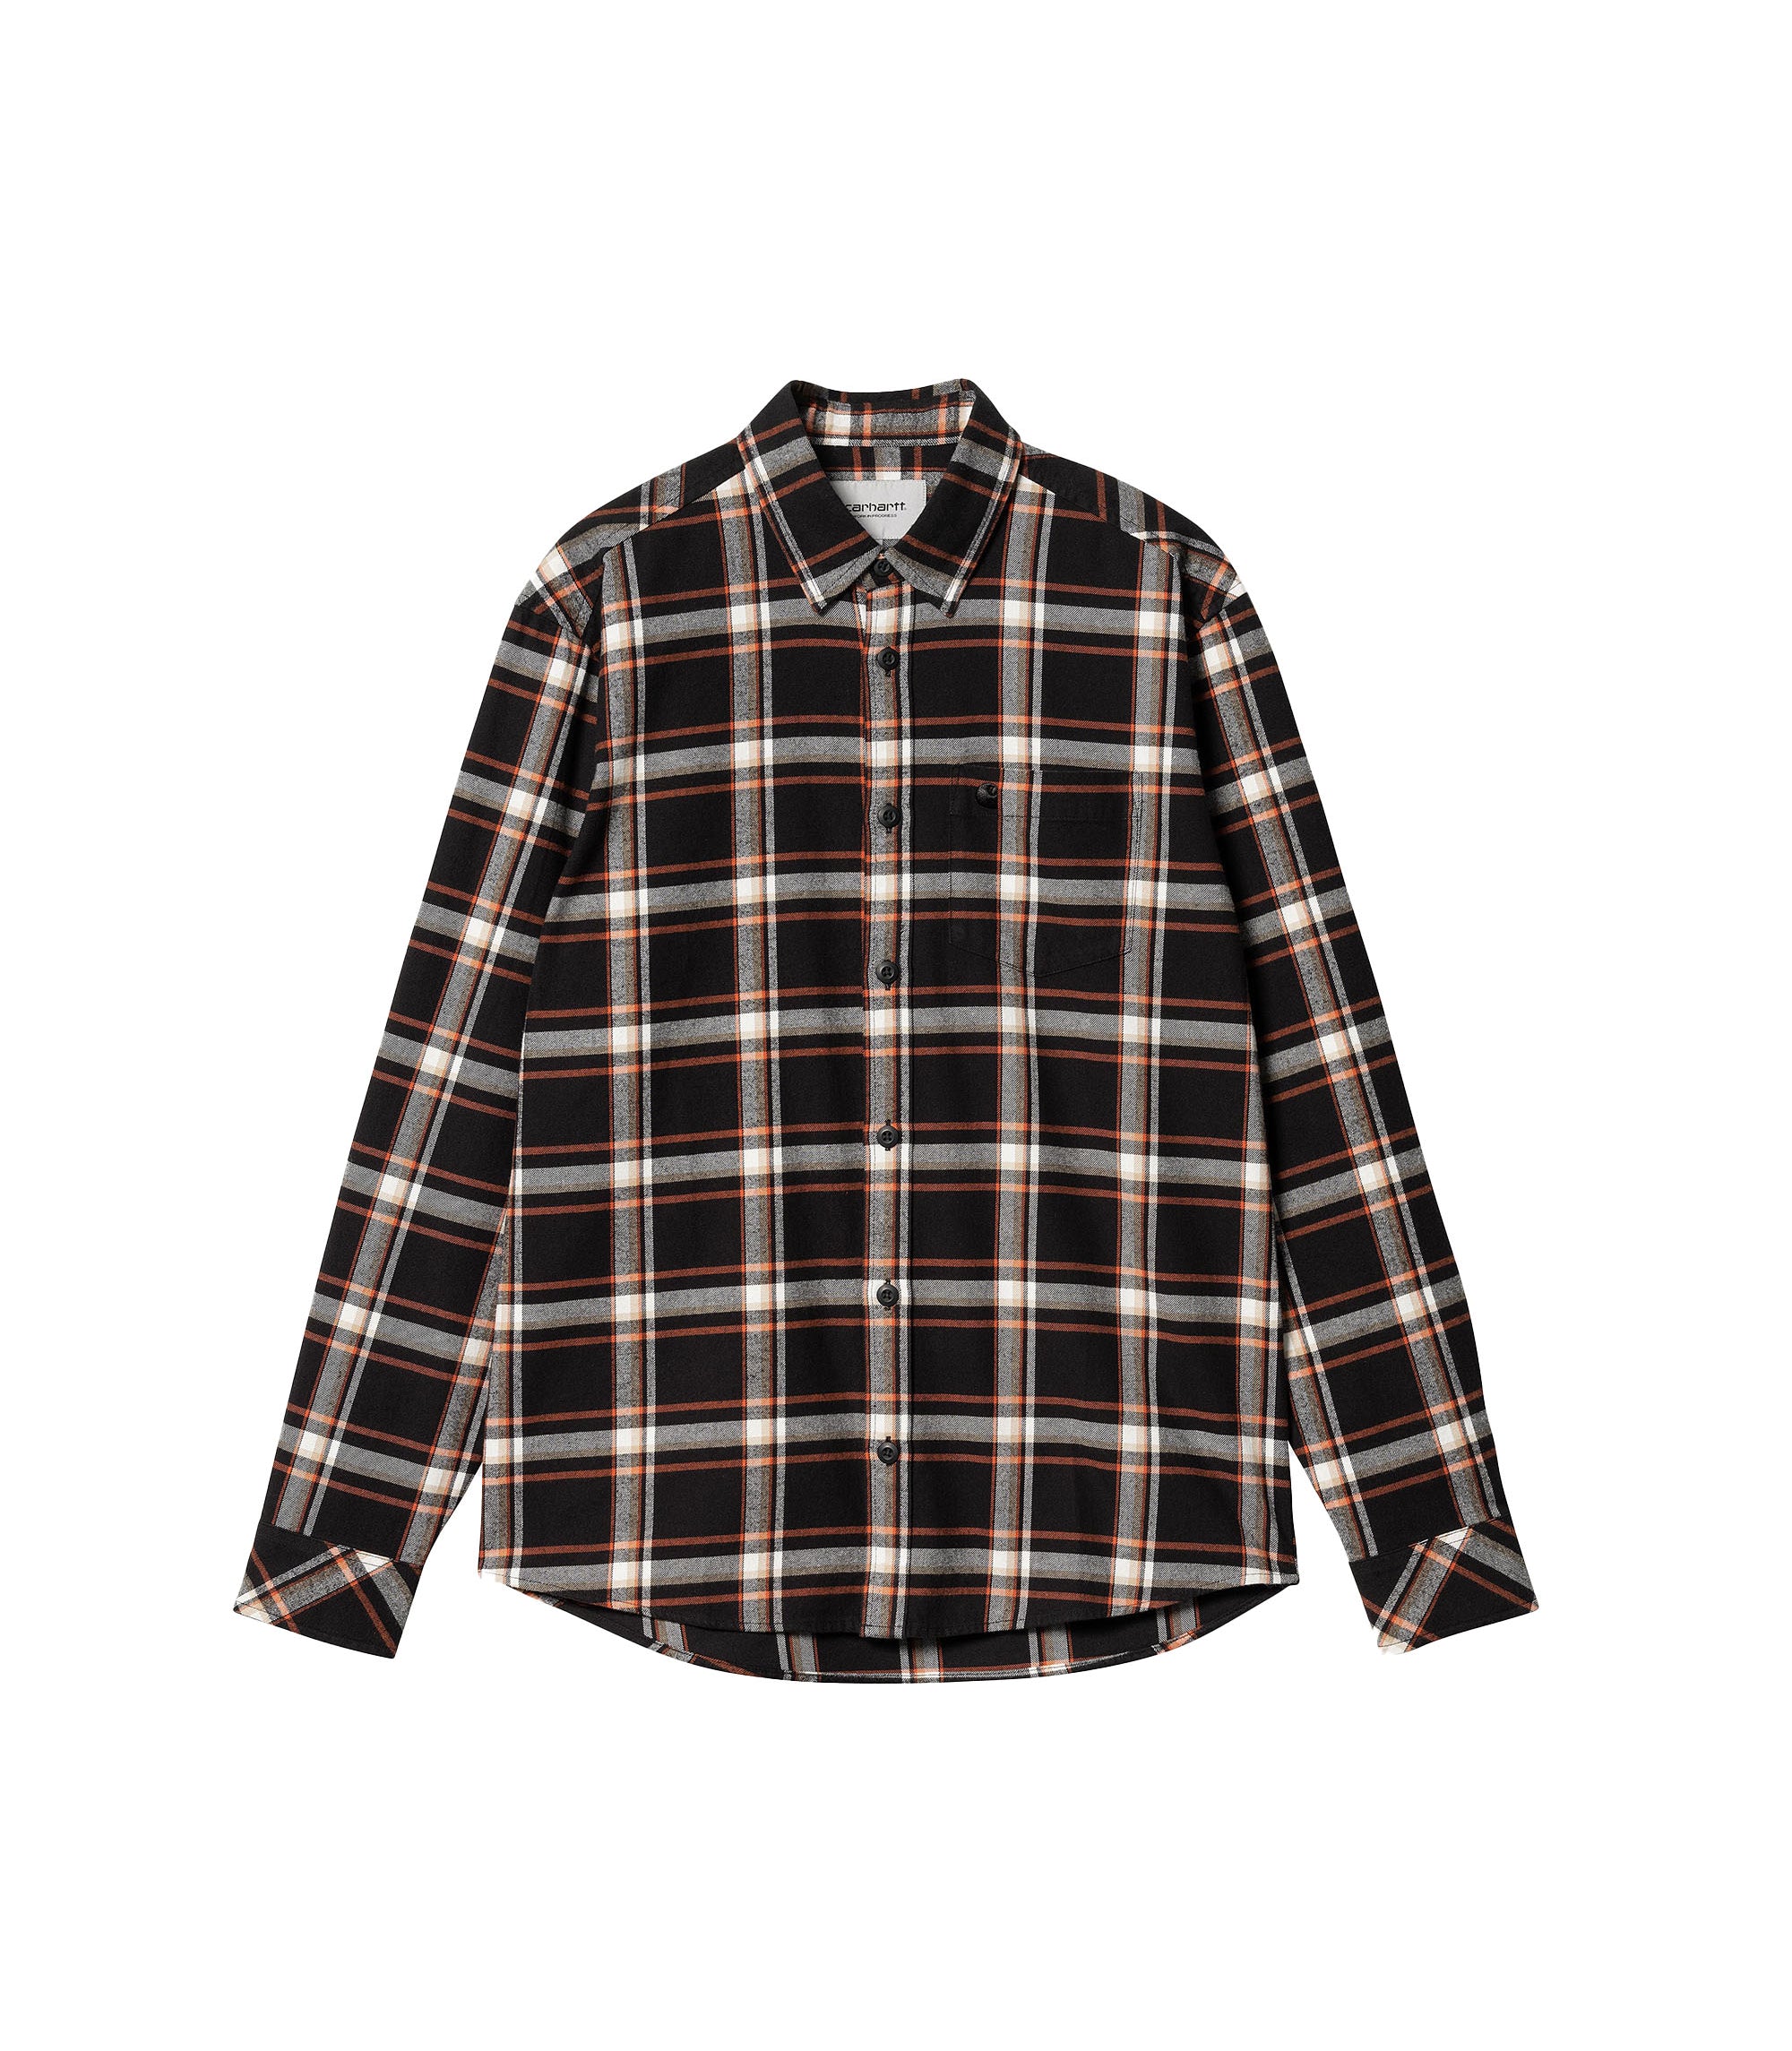 L/S Barten Shirt - Barten Check / Black